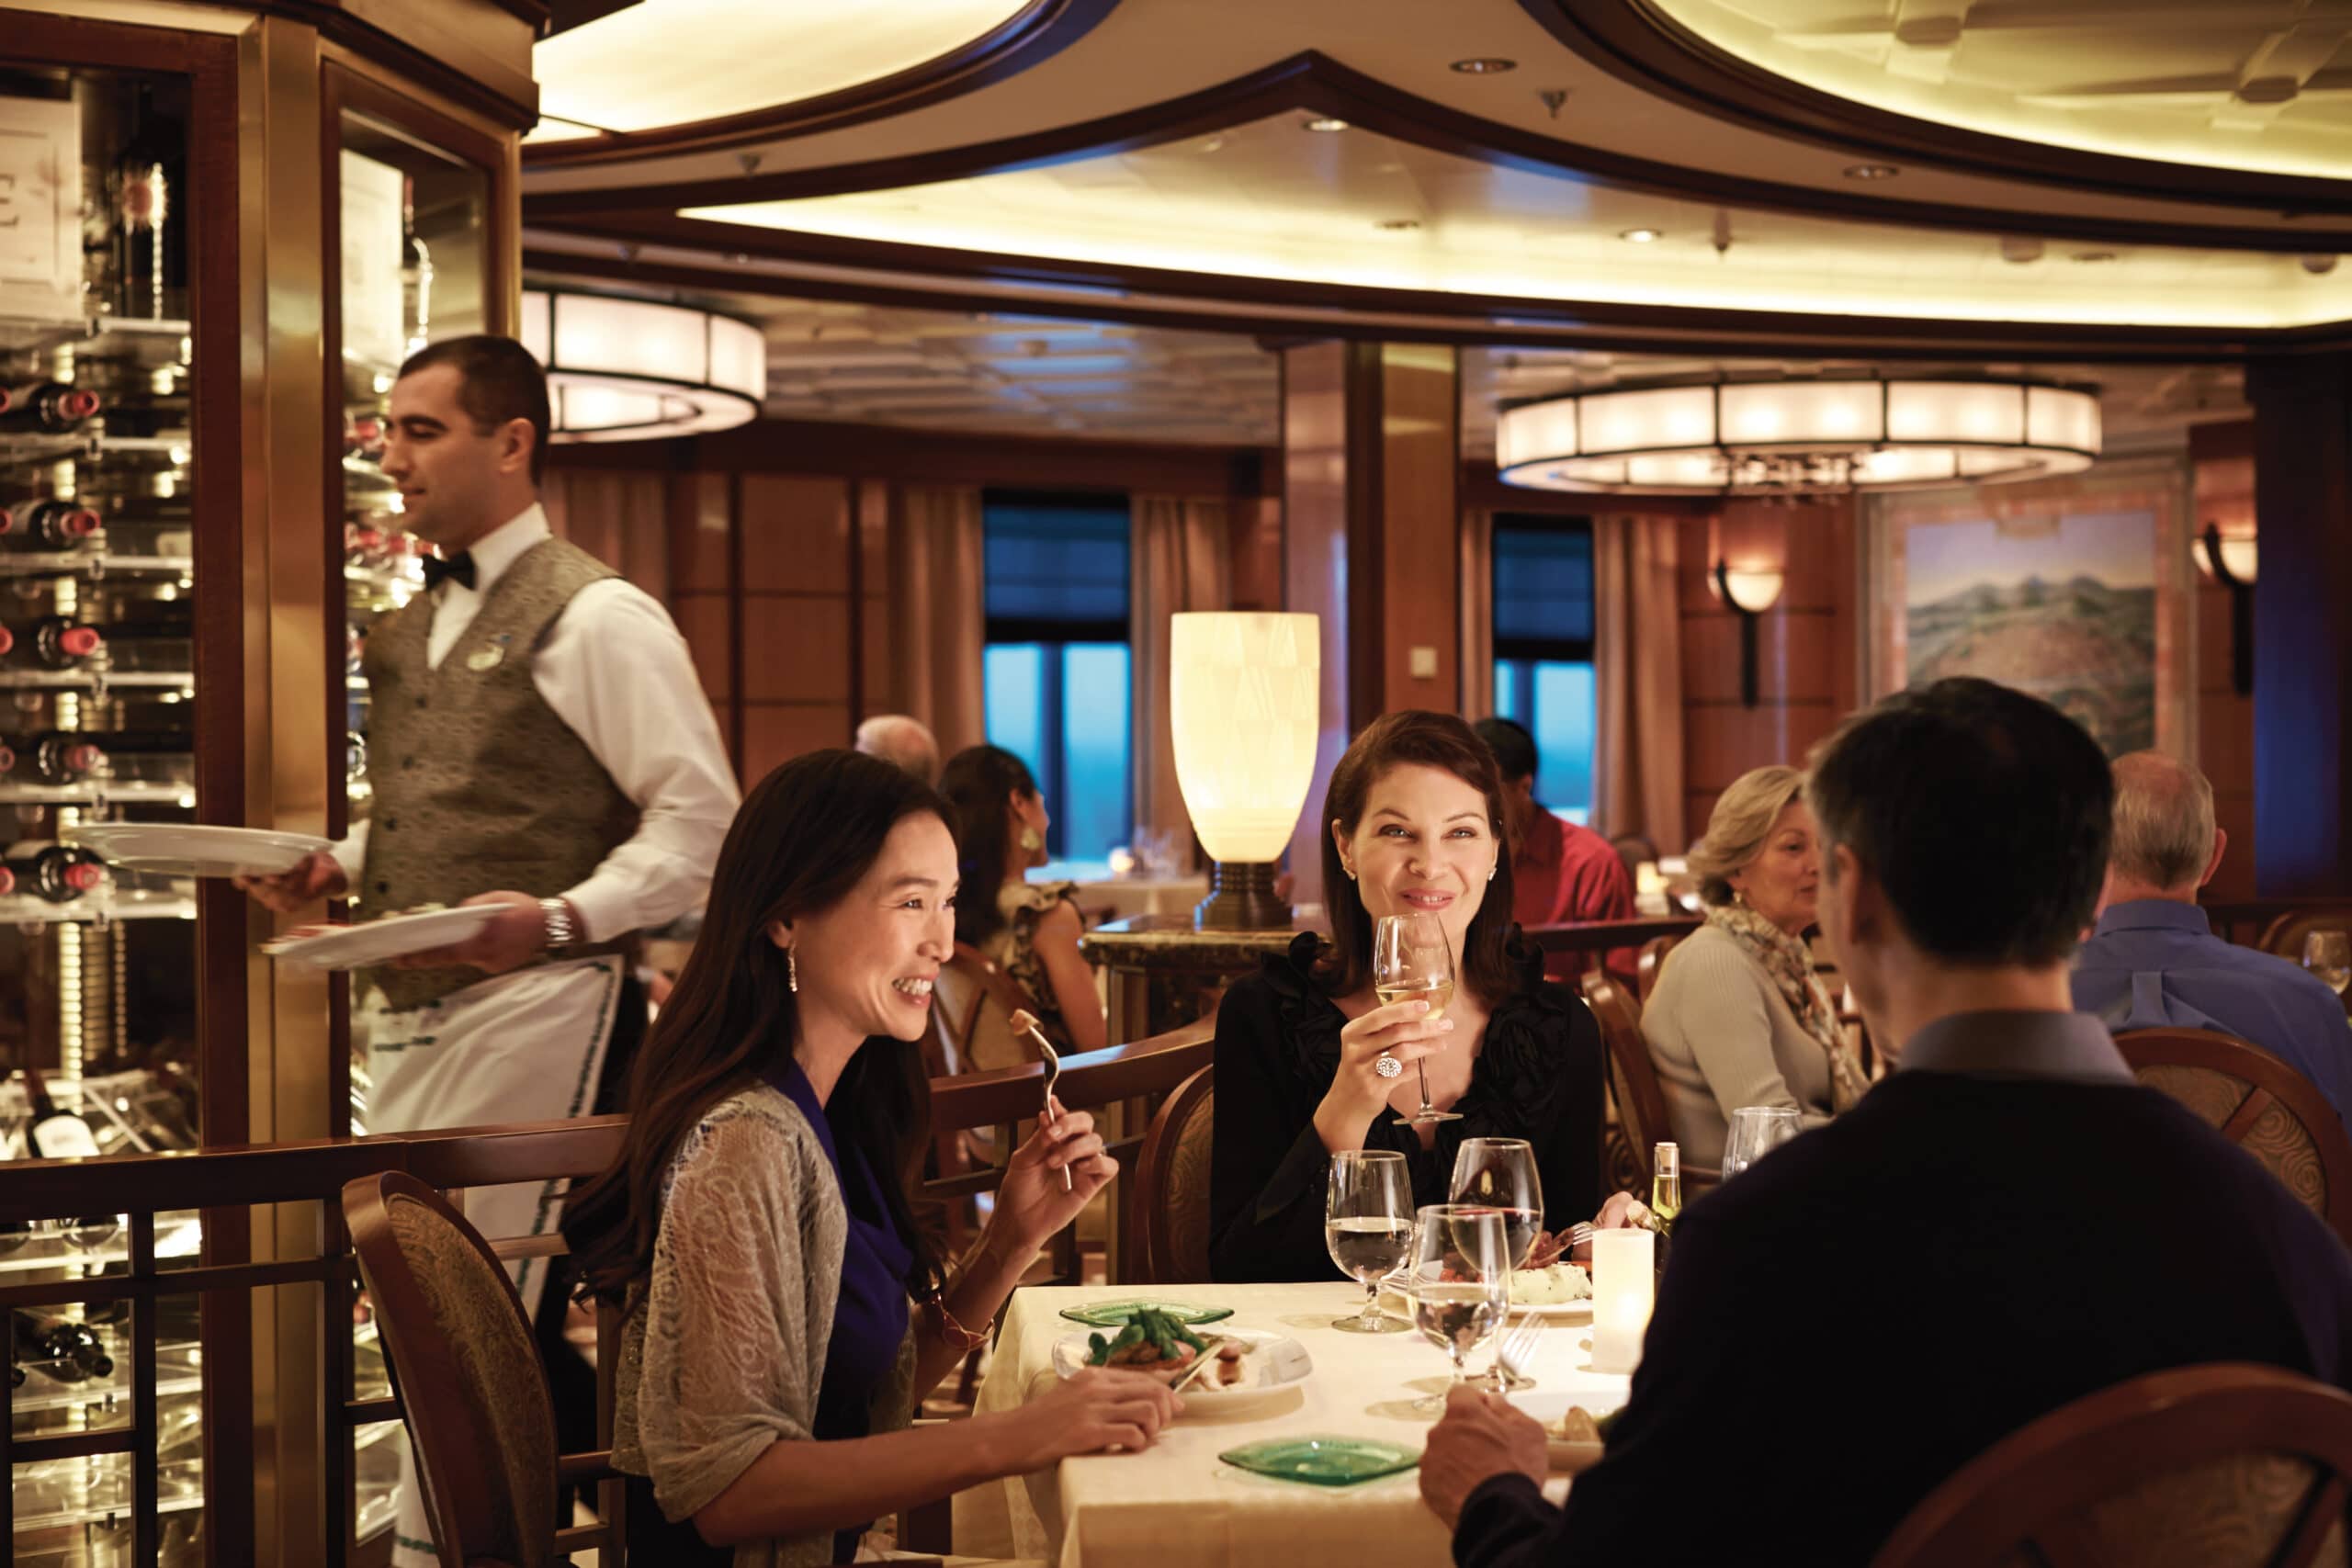 Cruiseschip-Regal Princess-Princess Cruises-Restaurant Sabatinis